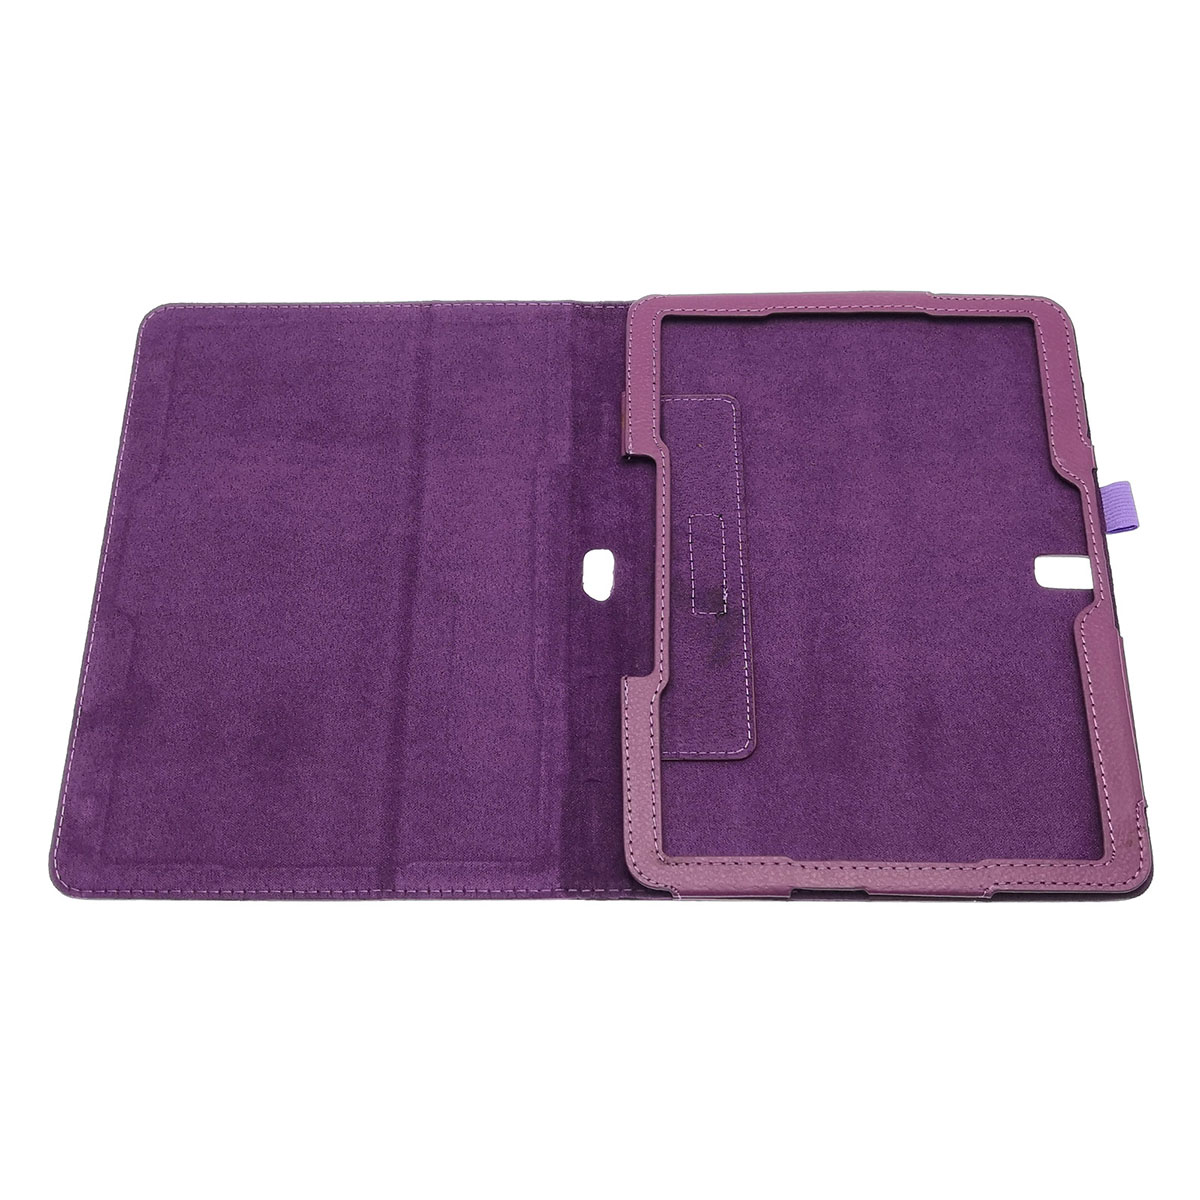 Чехол книжка для SAMSUNG Galaxy Tab Pro 10.1 (SM-T520), экокожа, цвет фиолетовый.